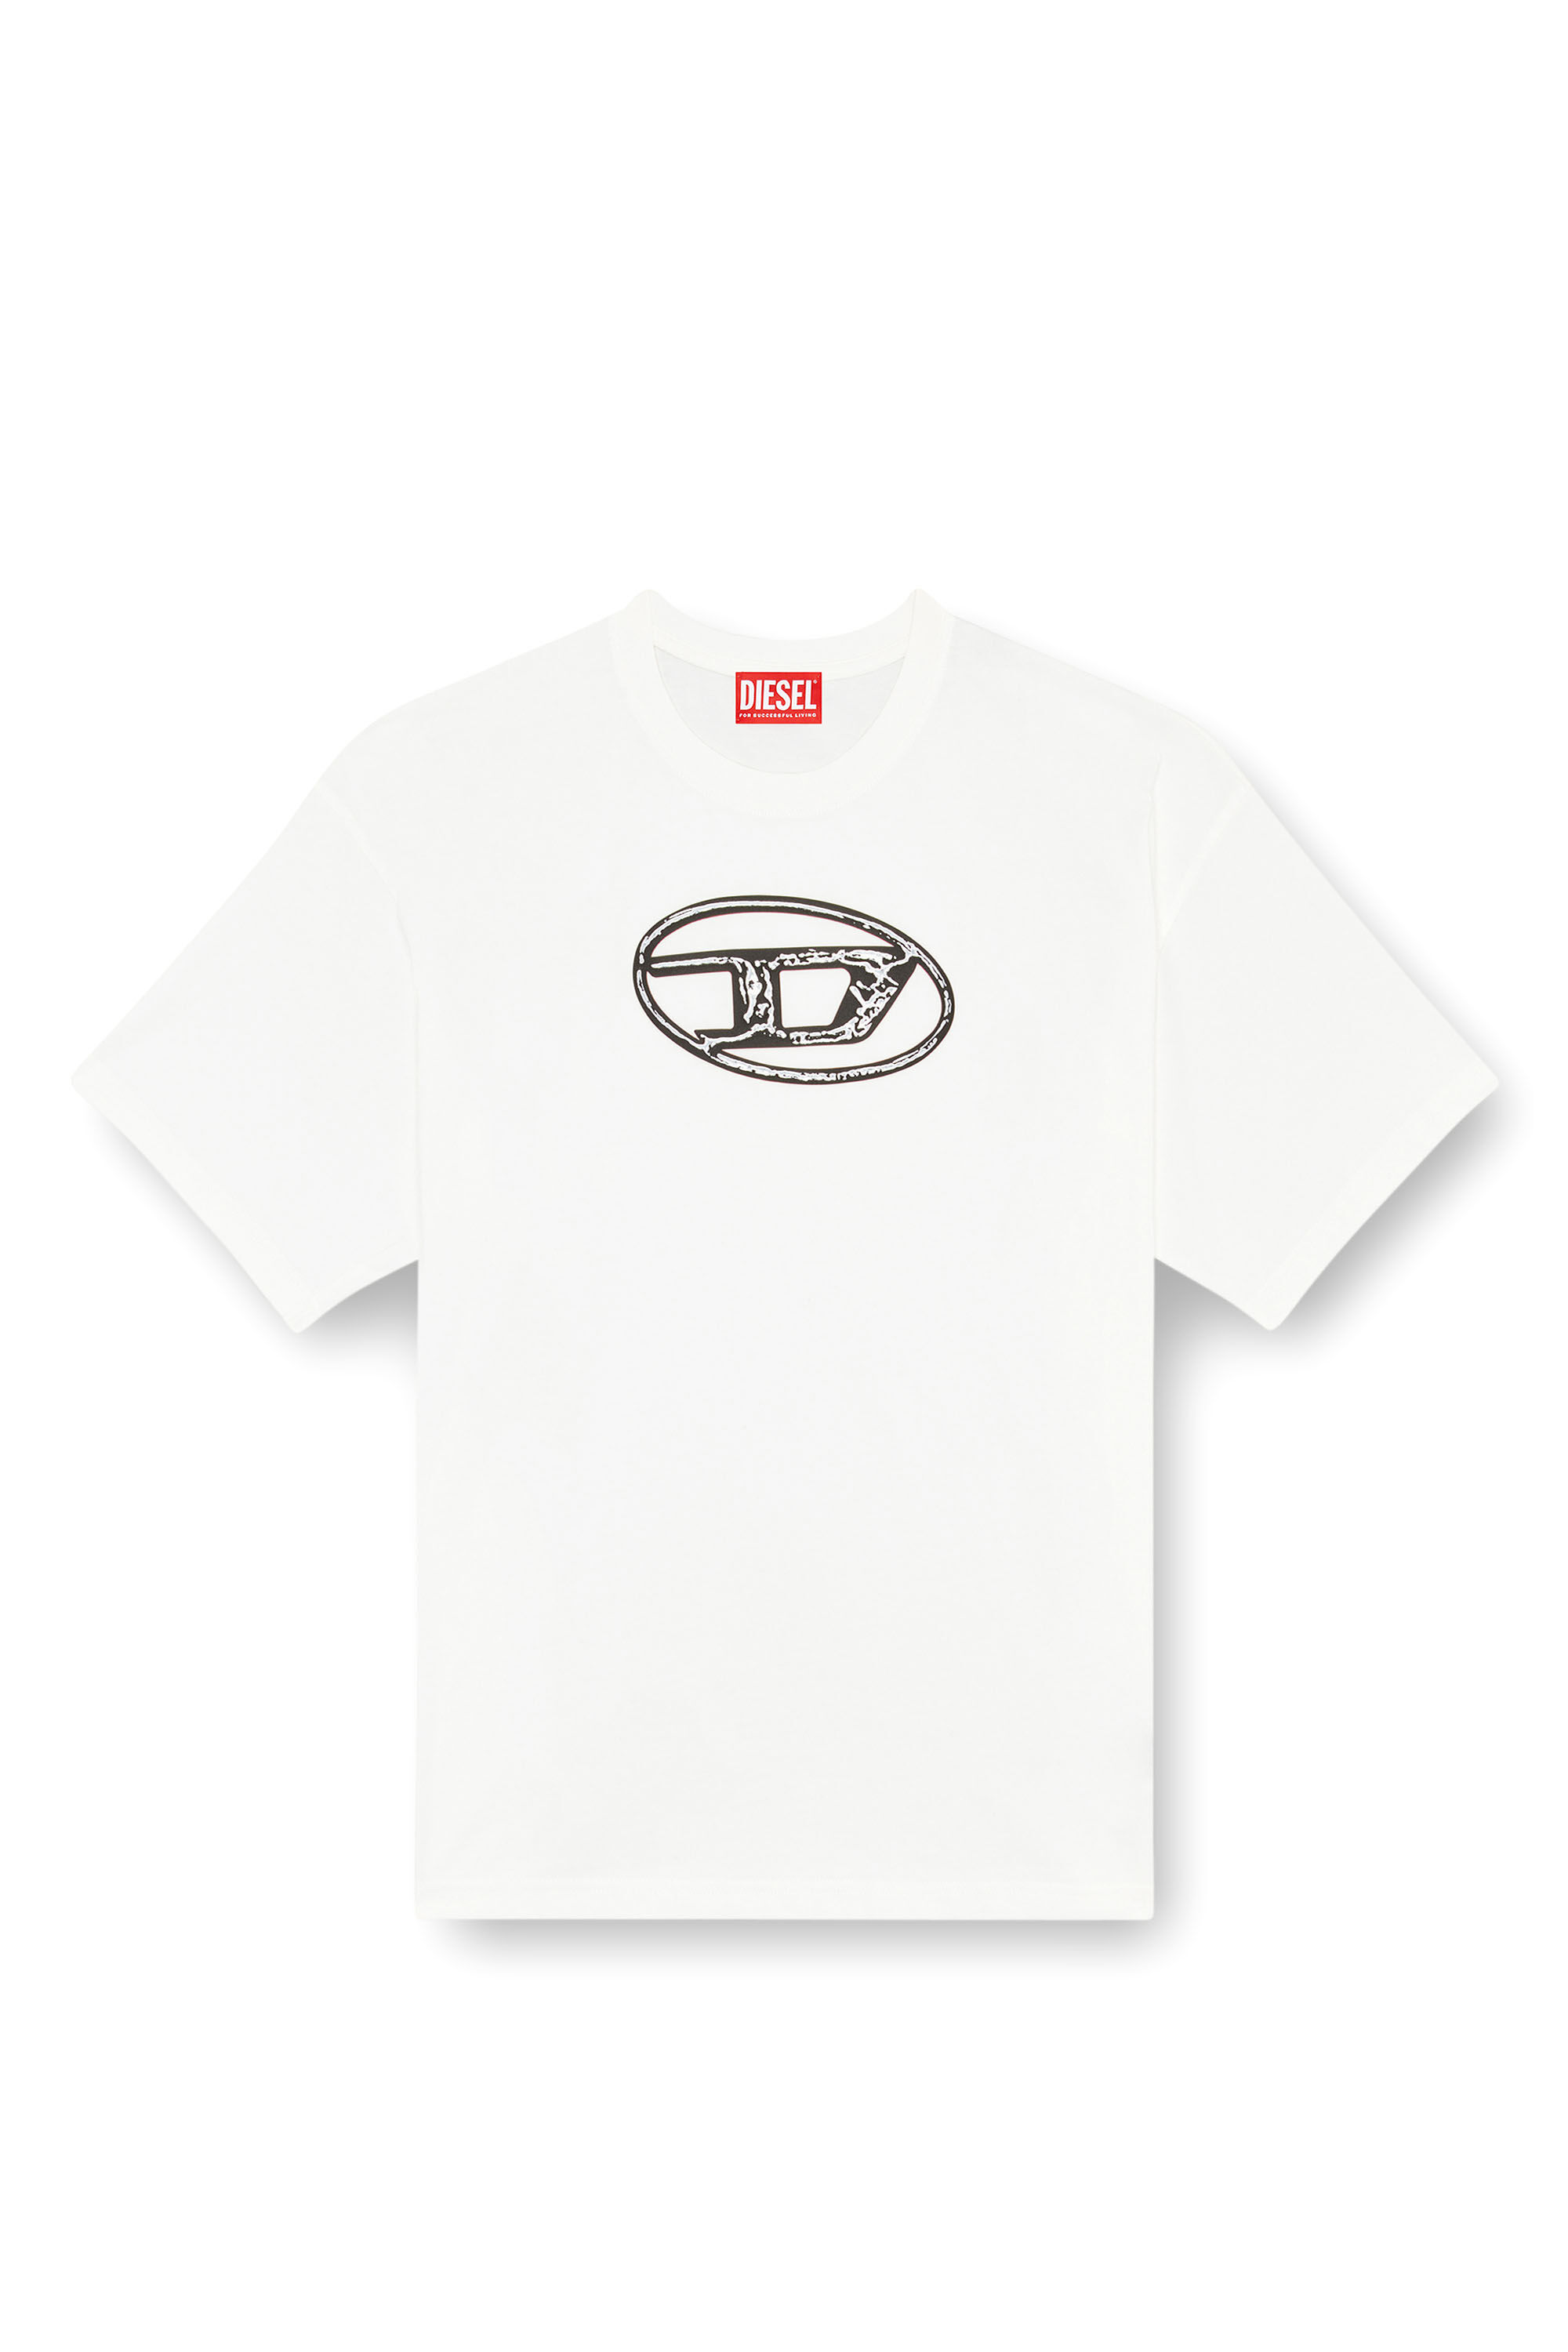 Diesel - T-BOXT-Q22, Homme T-shirt délavé avec imprimé Oval D in Blanc - Image 2